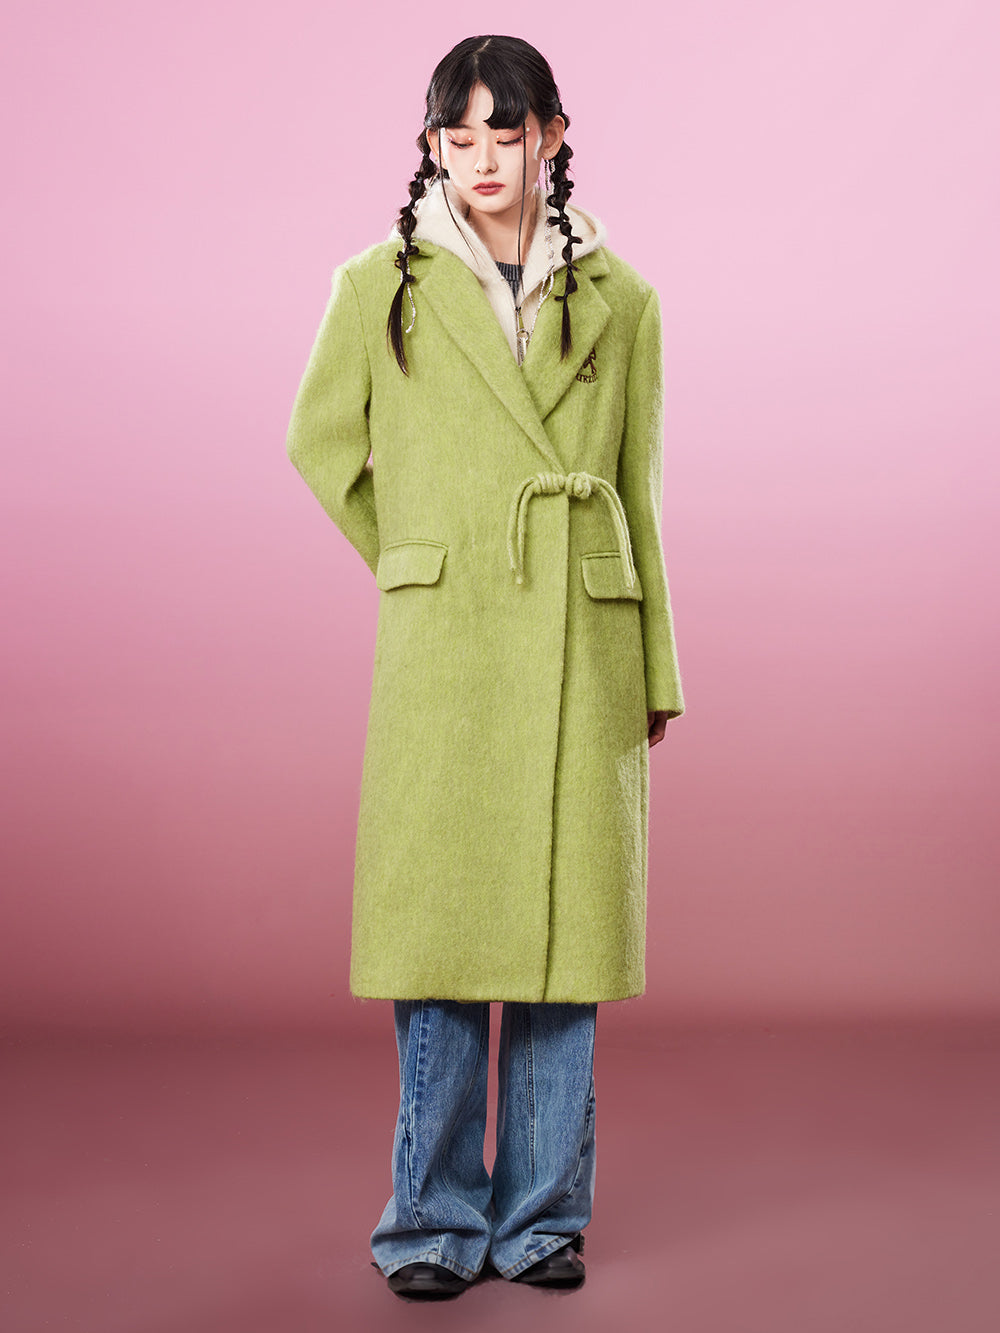 MUKZIN Avocado Green Double-faced Long Woolen Coat